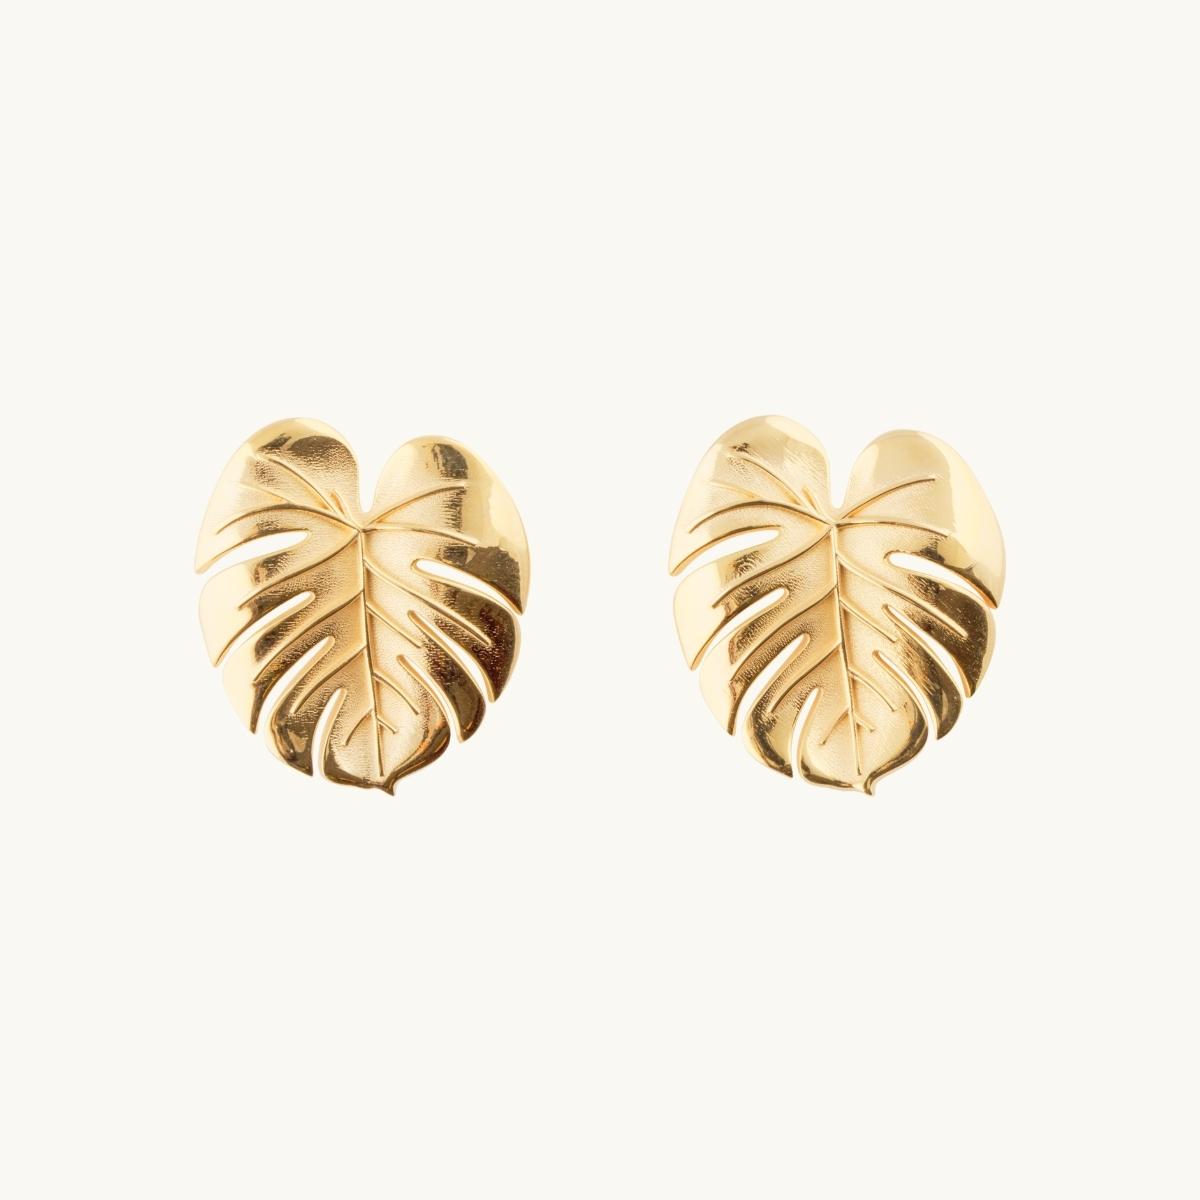 Earrings in shape of palm leafs in gold